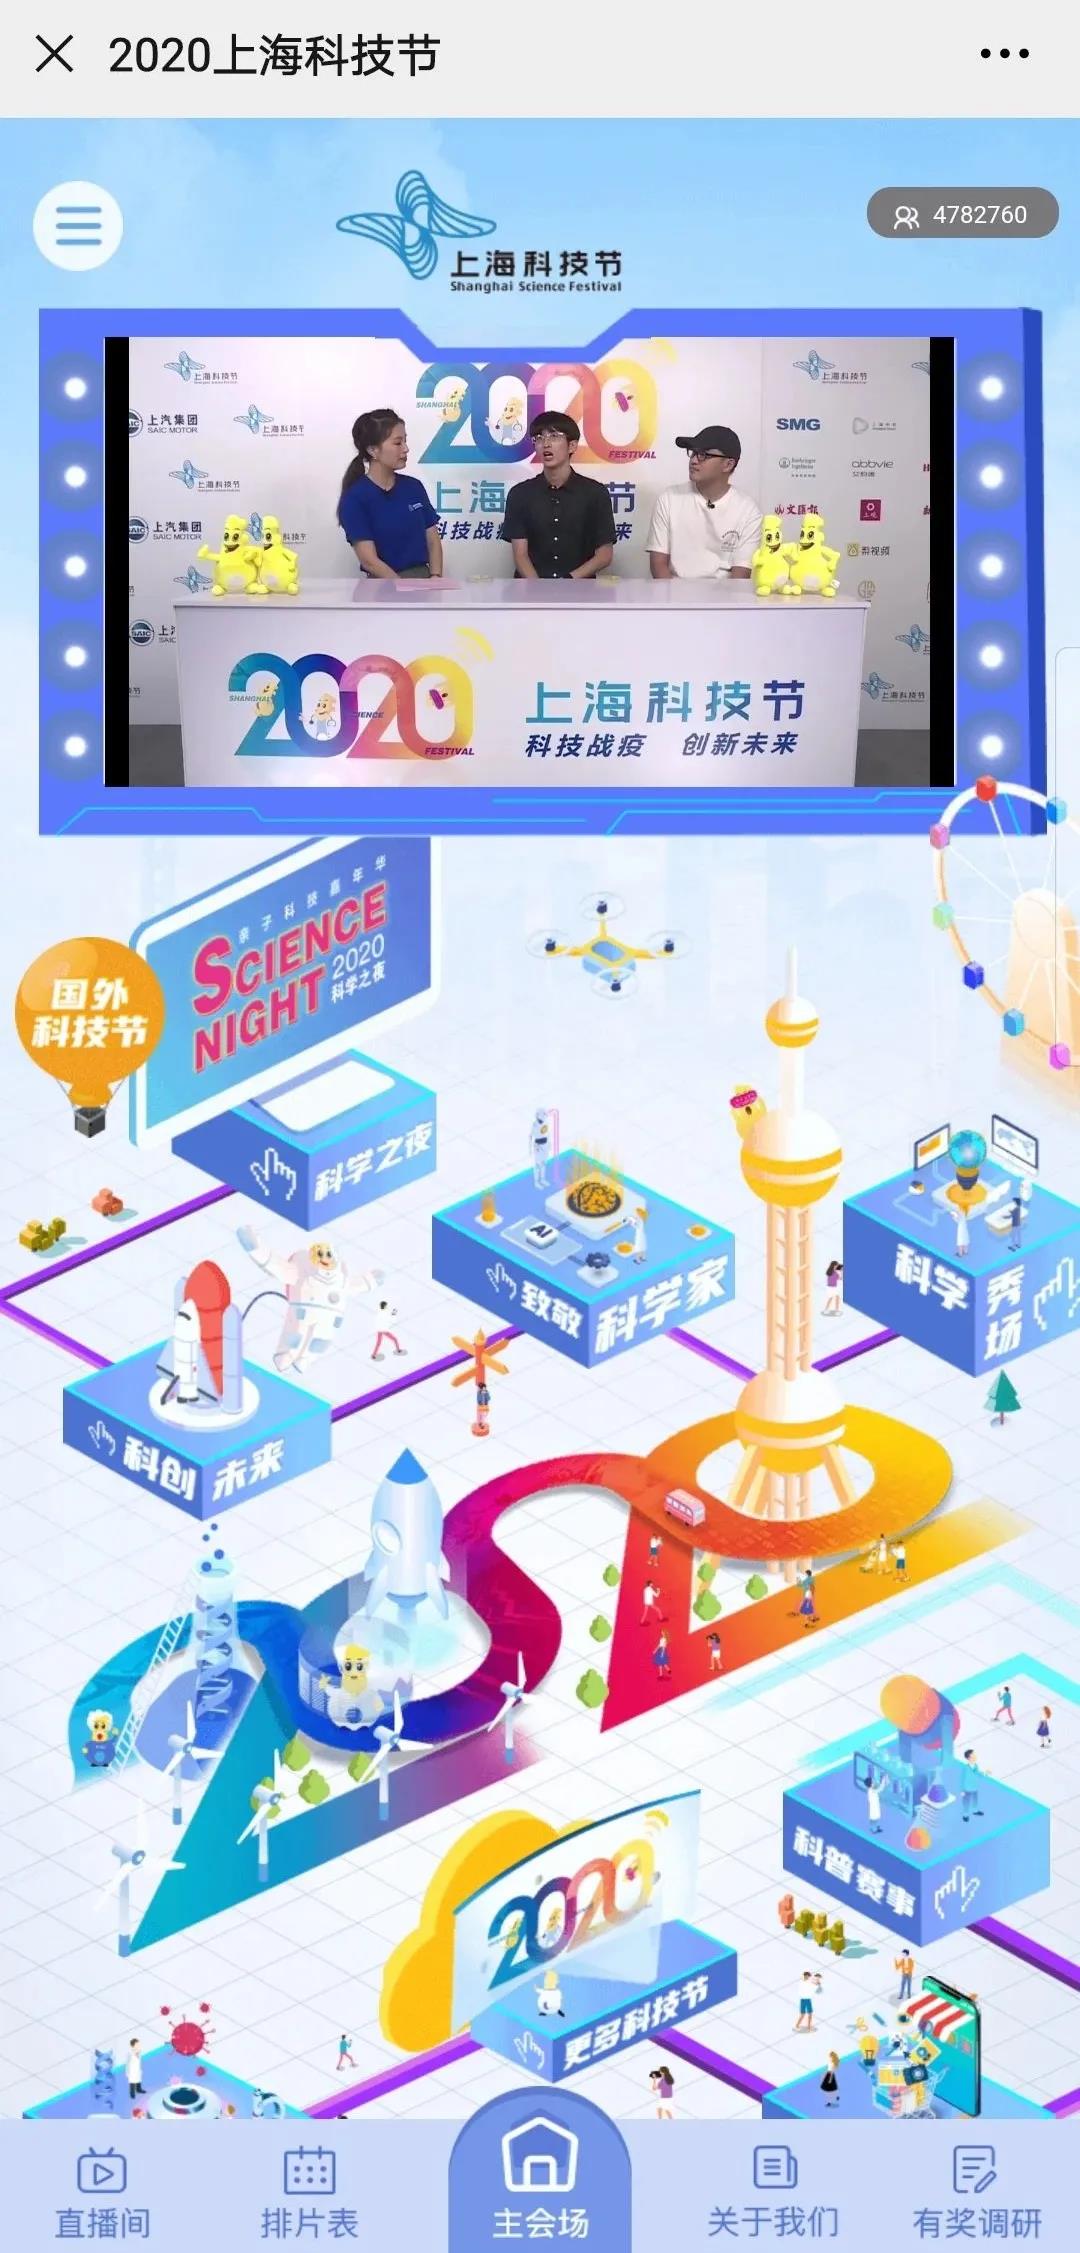 “云端”2020年上海科技节上线啦！今年怎么玩？一探究竟——1